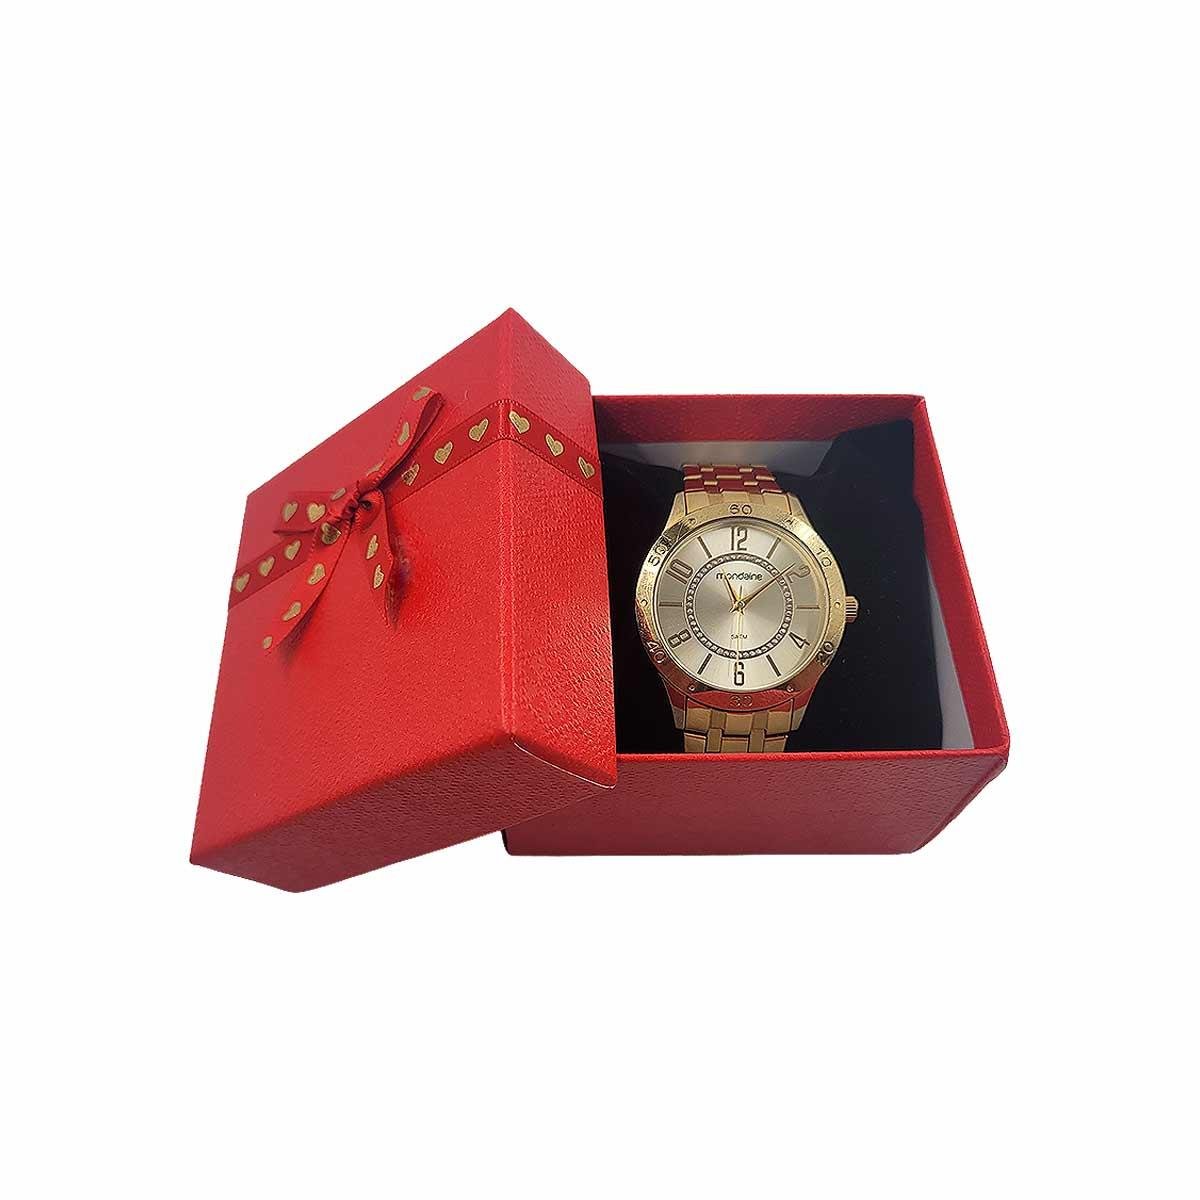 Caixinha de Presente Grande Dijon para Relógio com Laço de Coração 8,5x9